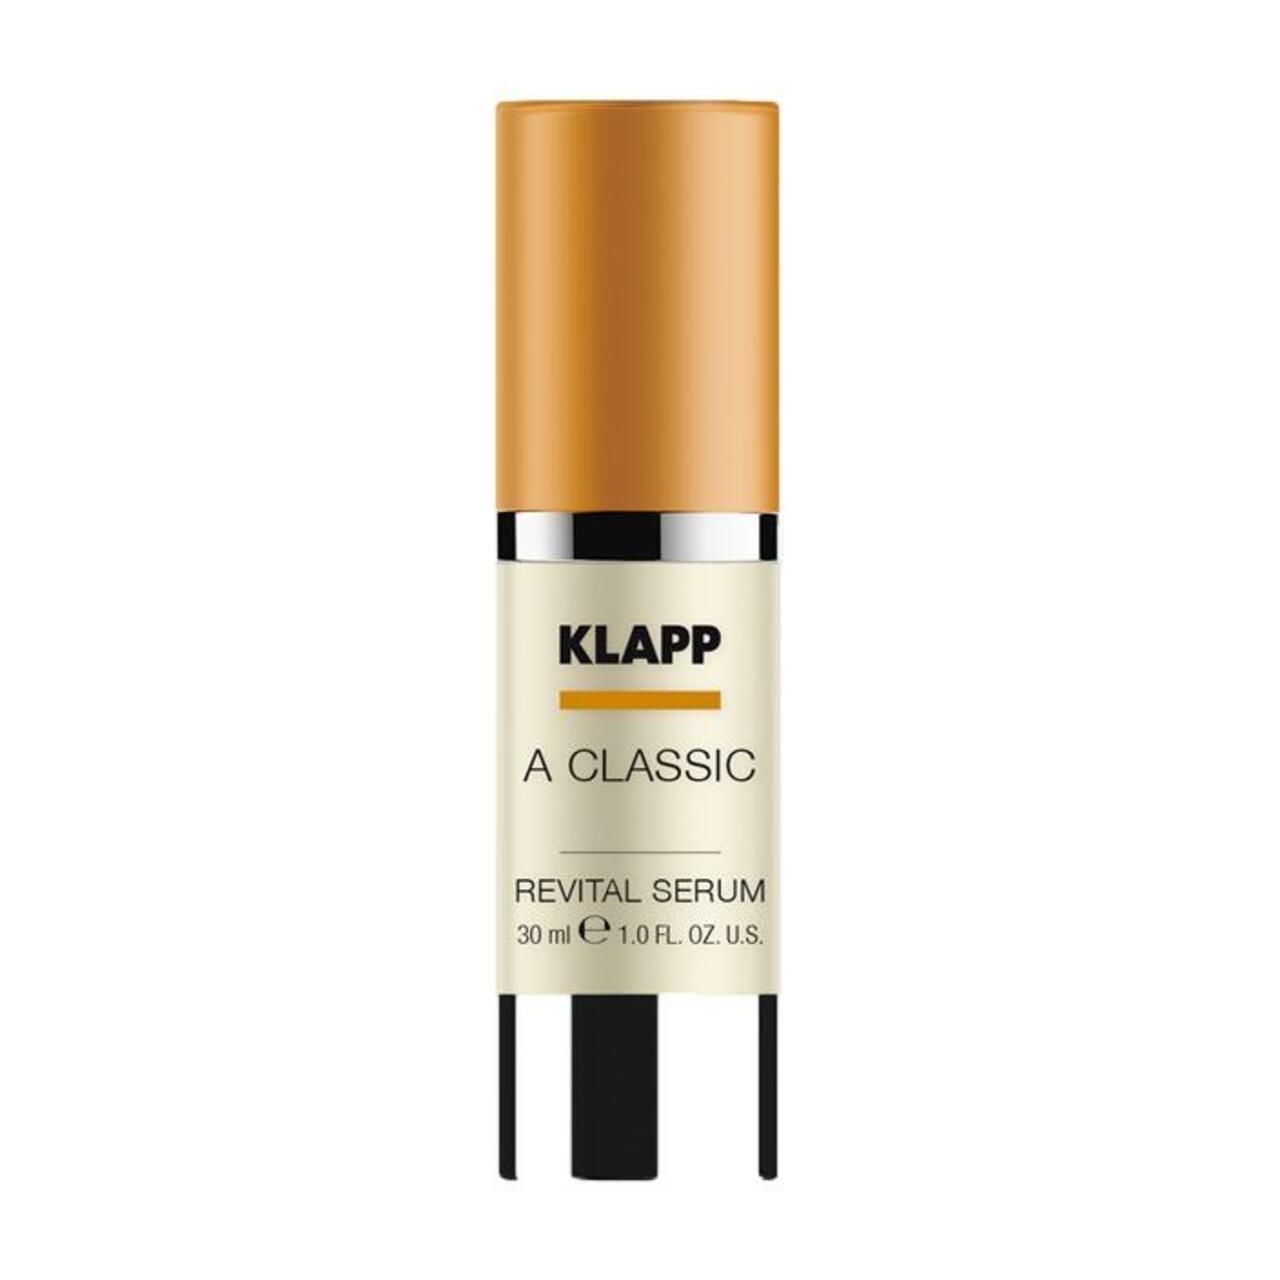 Klapp, A Classic Revital Serum